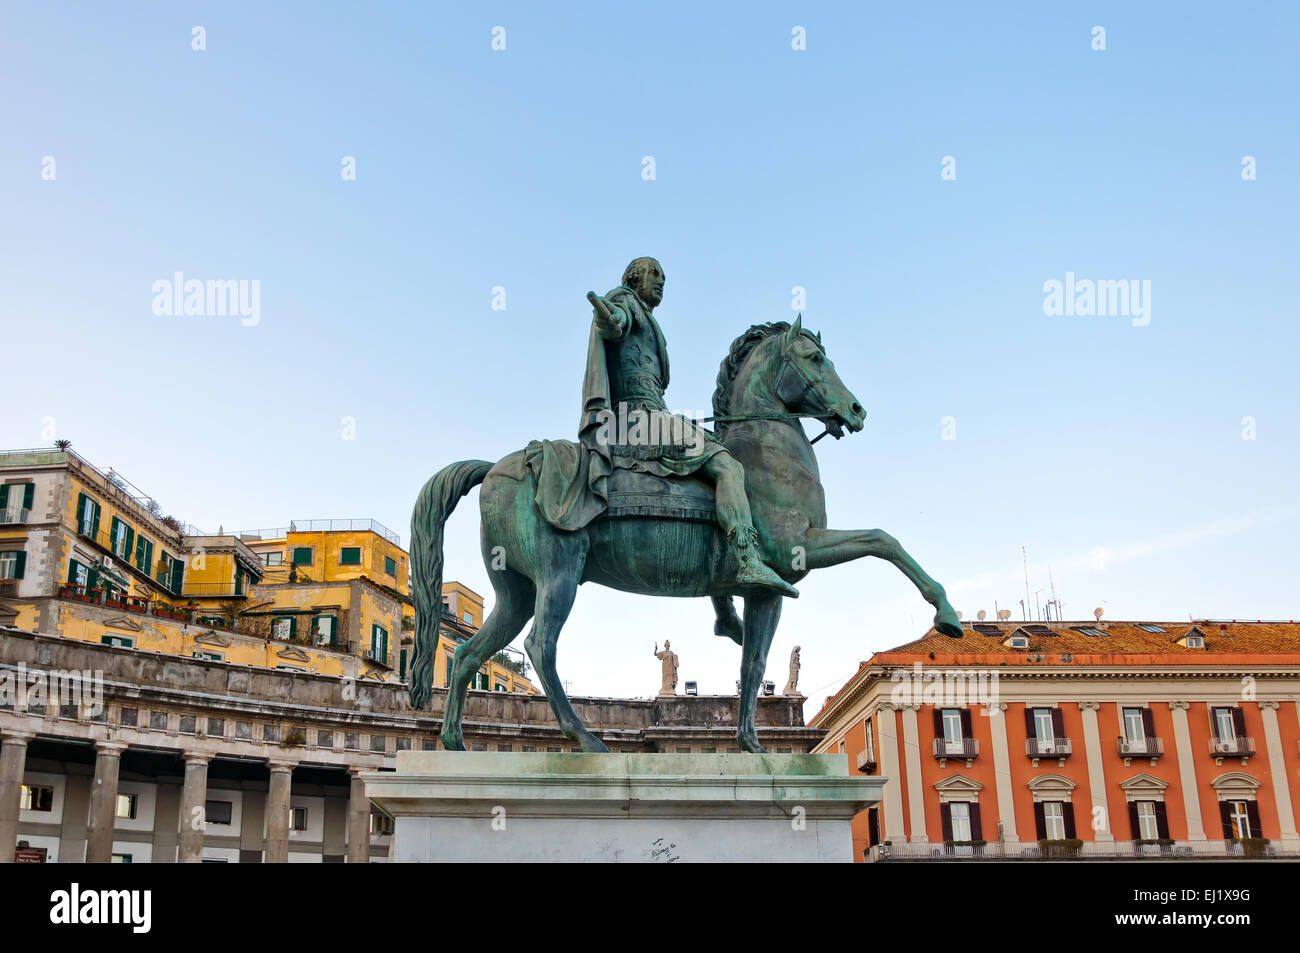 Napoli, Italia - 1 Gennaio 2014: Statua di re Carlo III di Spagna in Piazza del Plebiscito a Napoli, Italia. Storico di Napoli cit Foto Stock